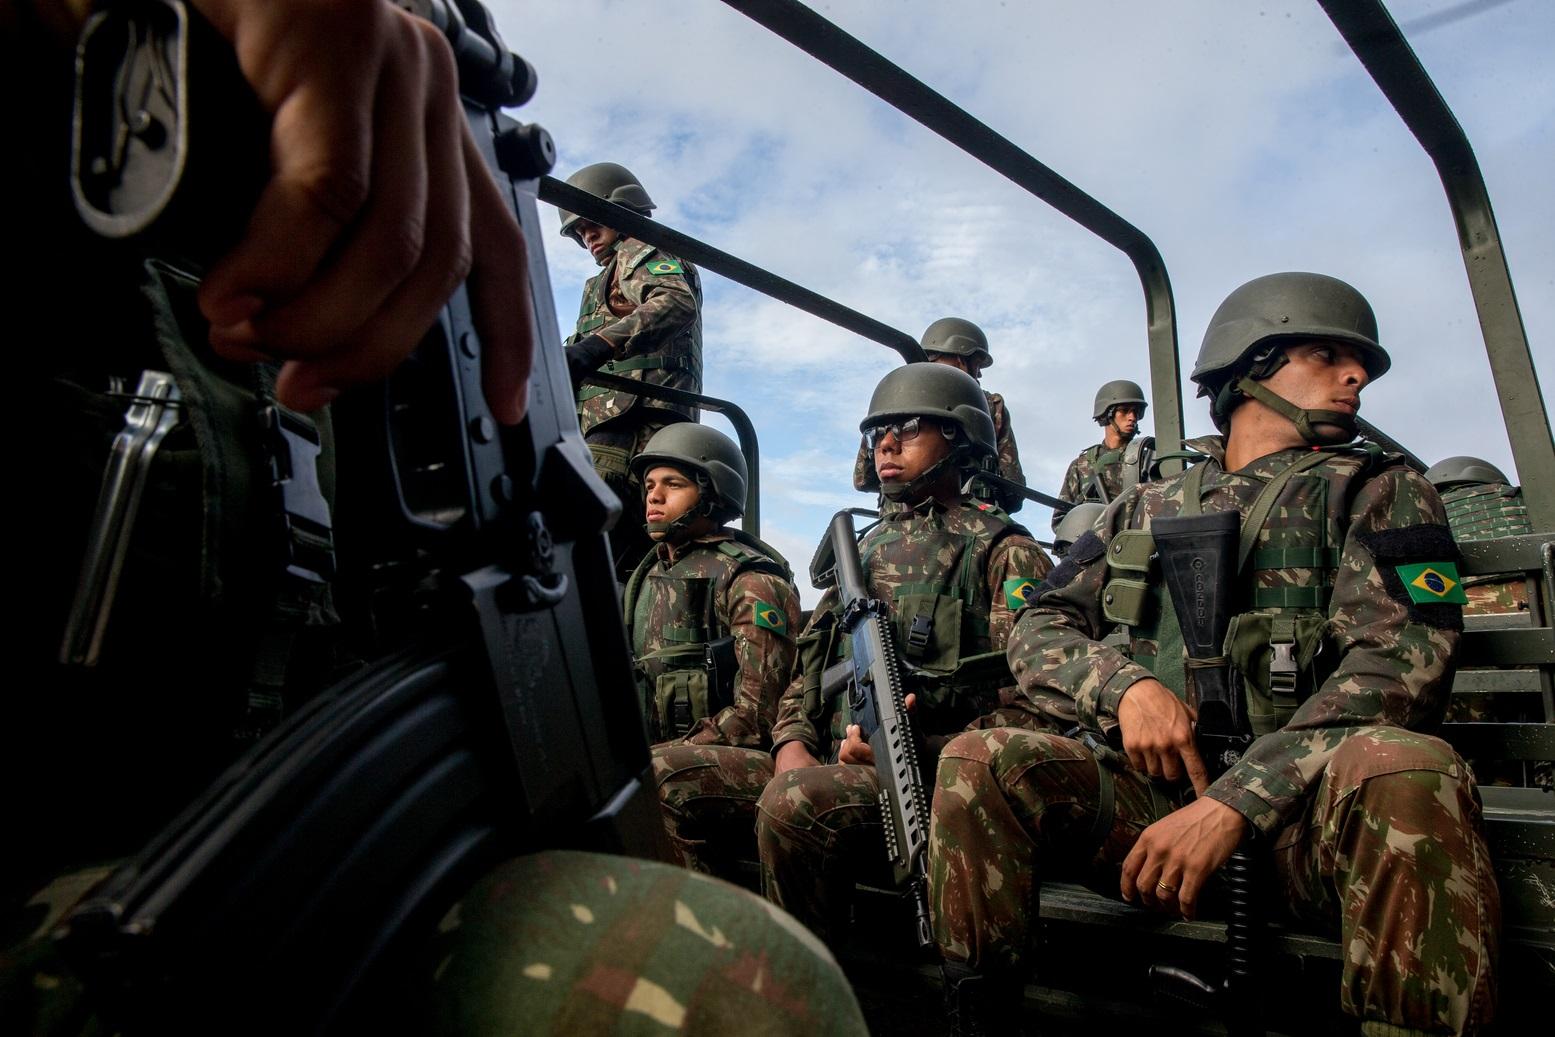 Exército brasileiro convoca reservistas para o EXAR 2022 - PortalJNN